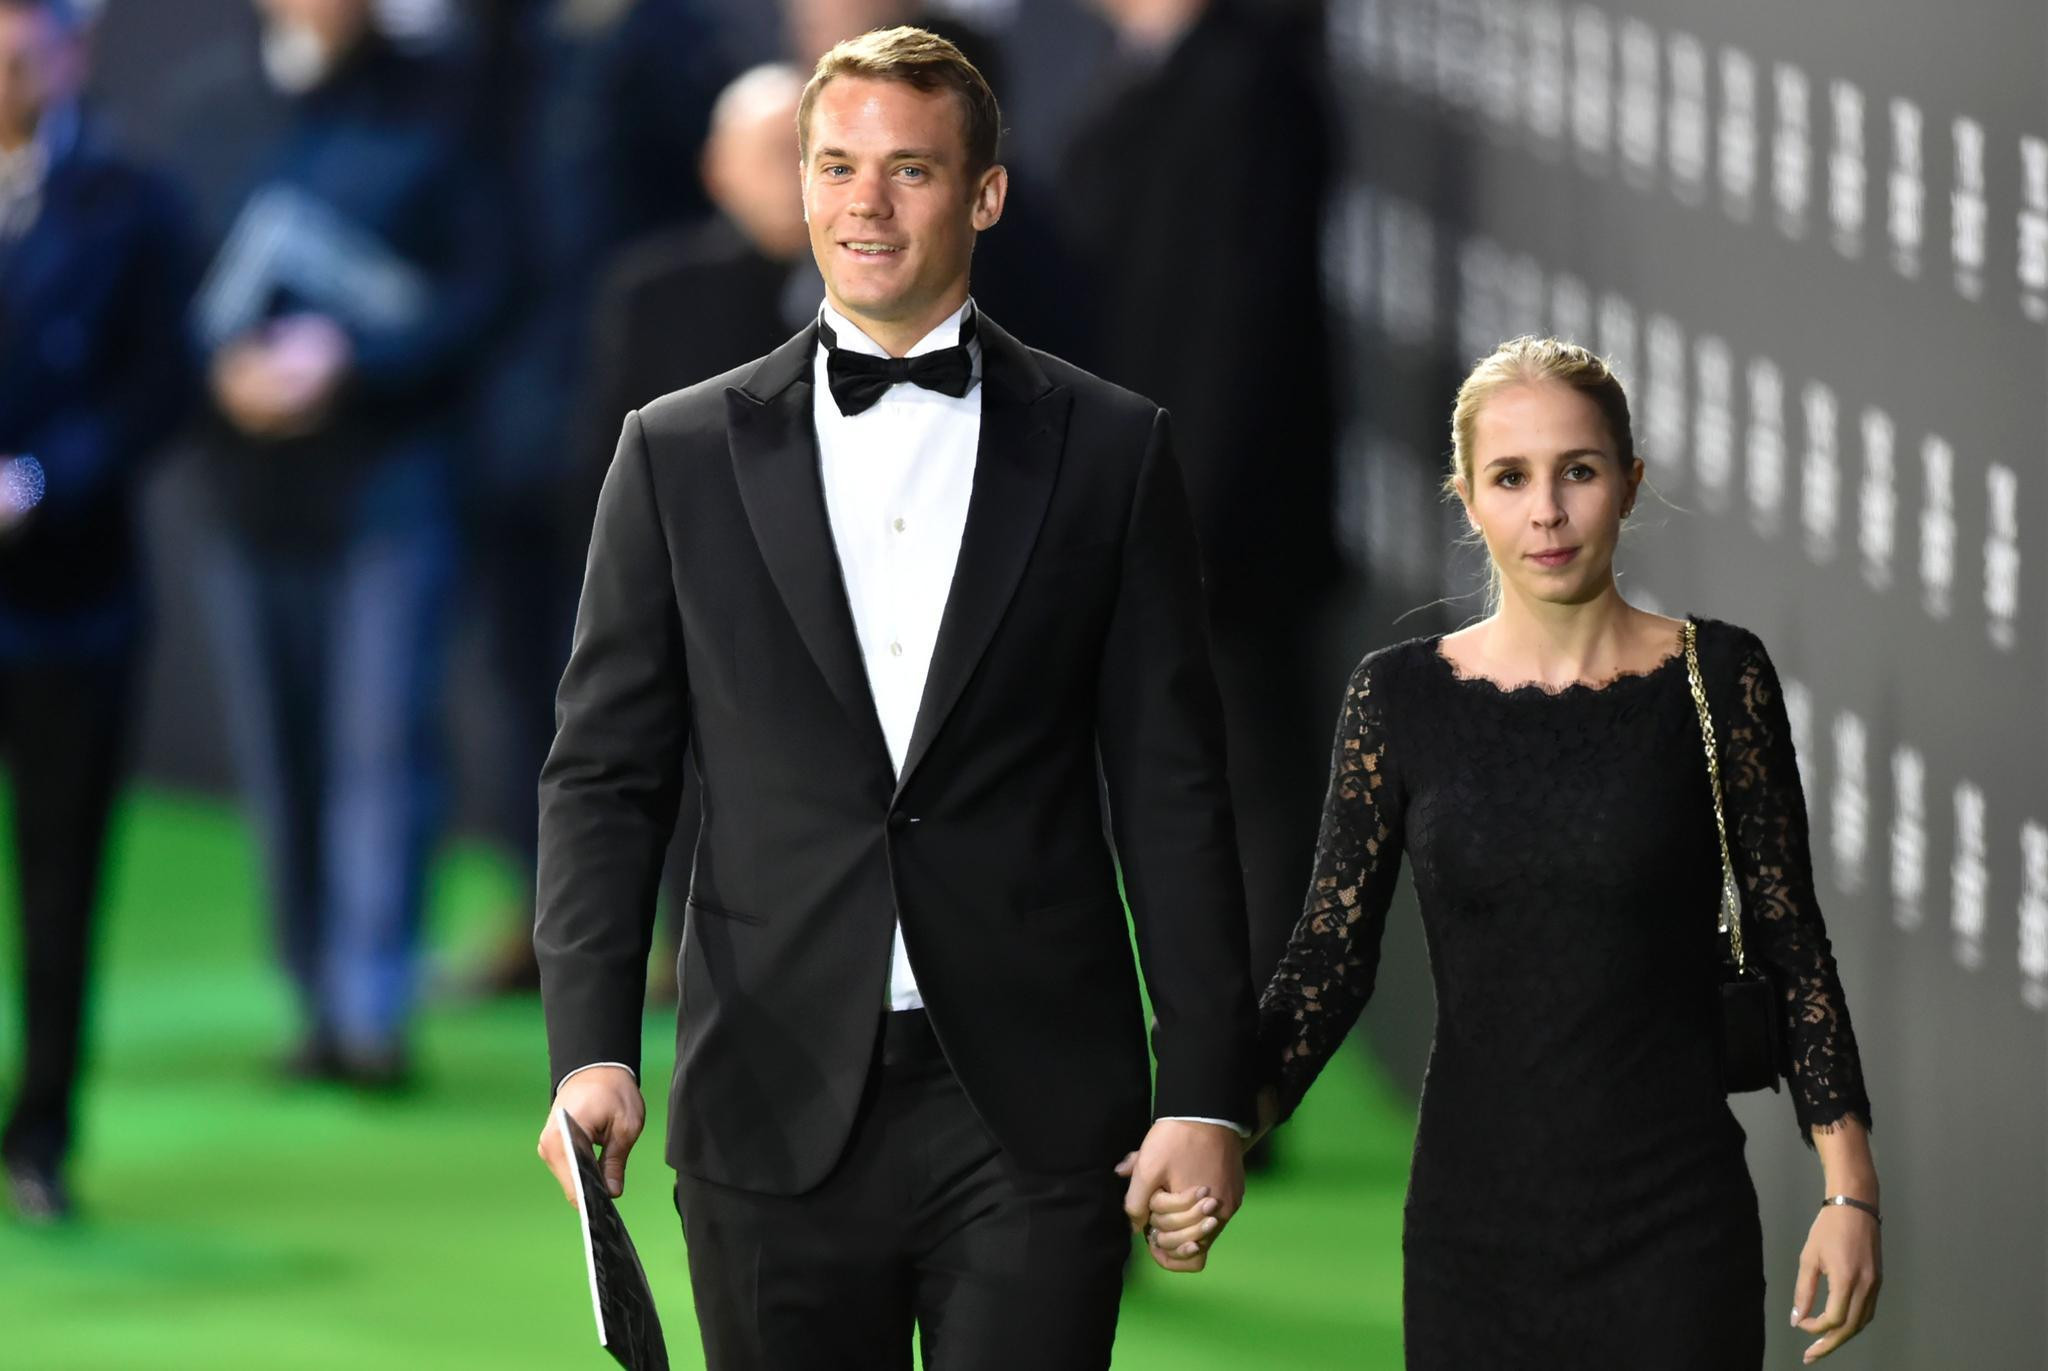 Hochzeit Manuel Neuer
 Manuel Neuer auf Instagram So süß gratuliert ihm seine